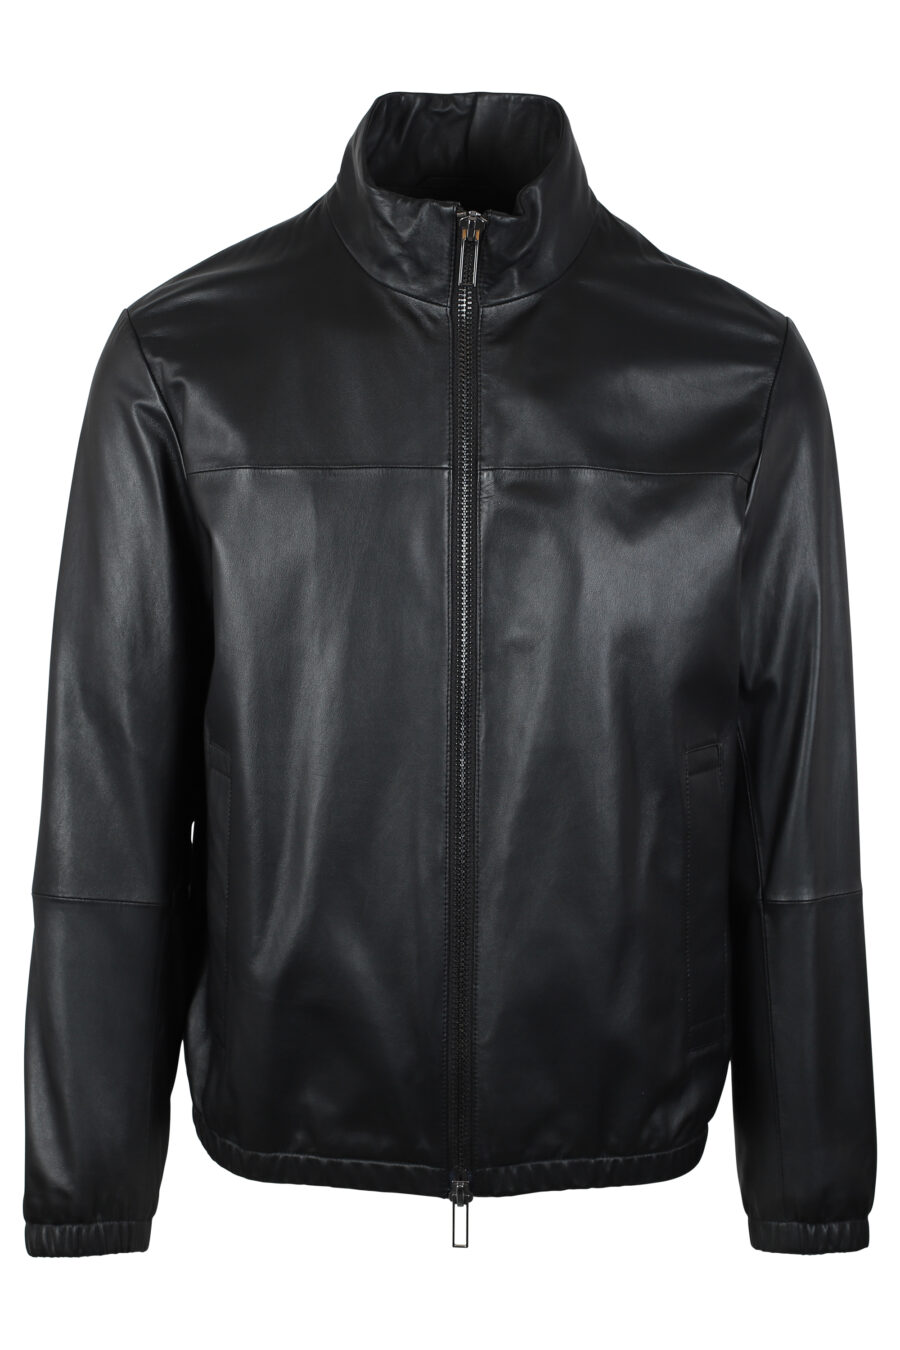 Black leather jacket with mini-logo - IMG 4658